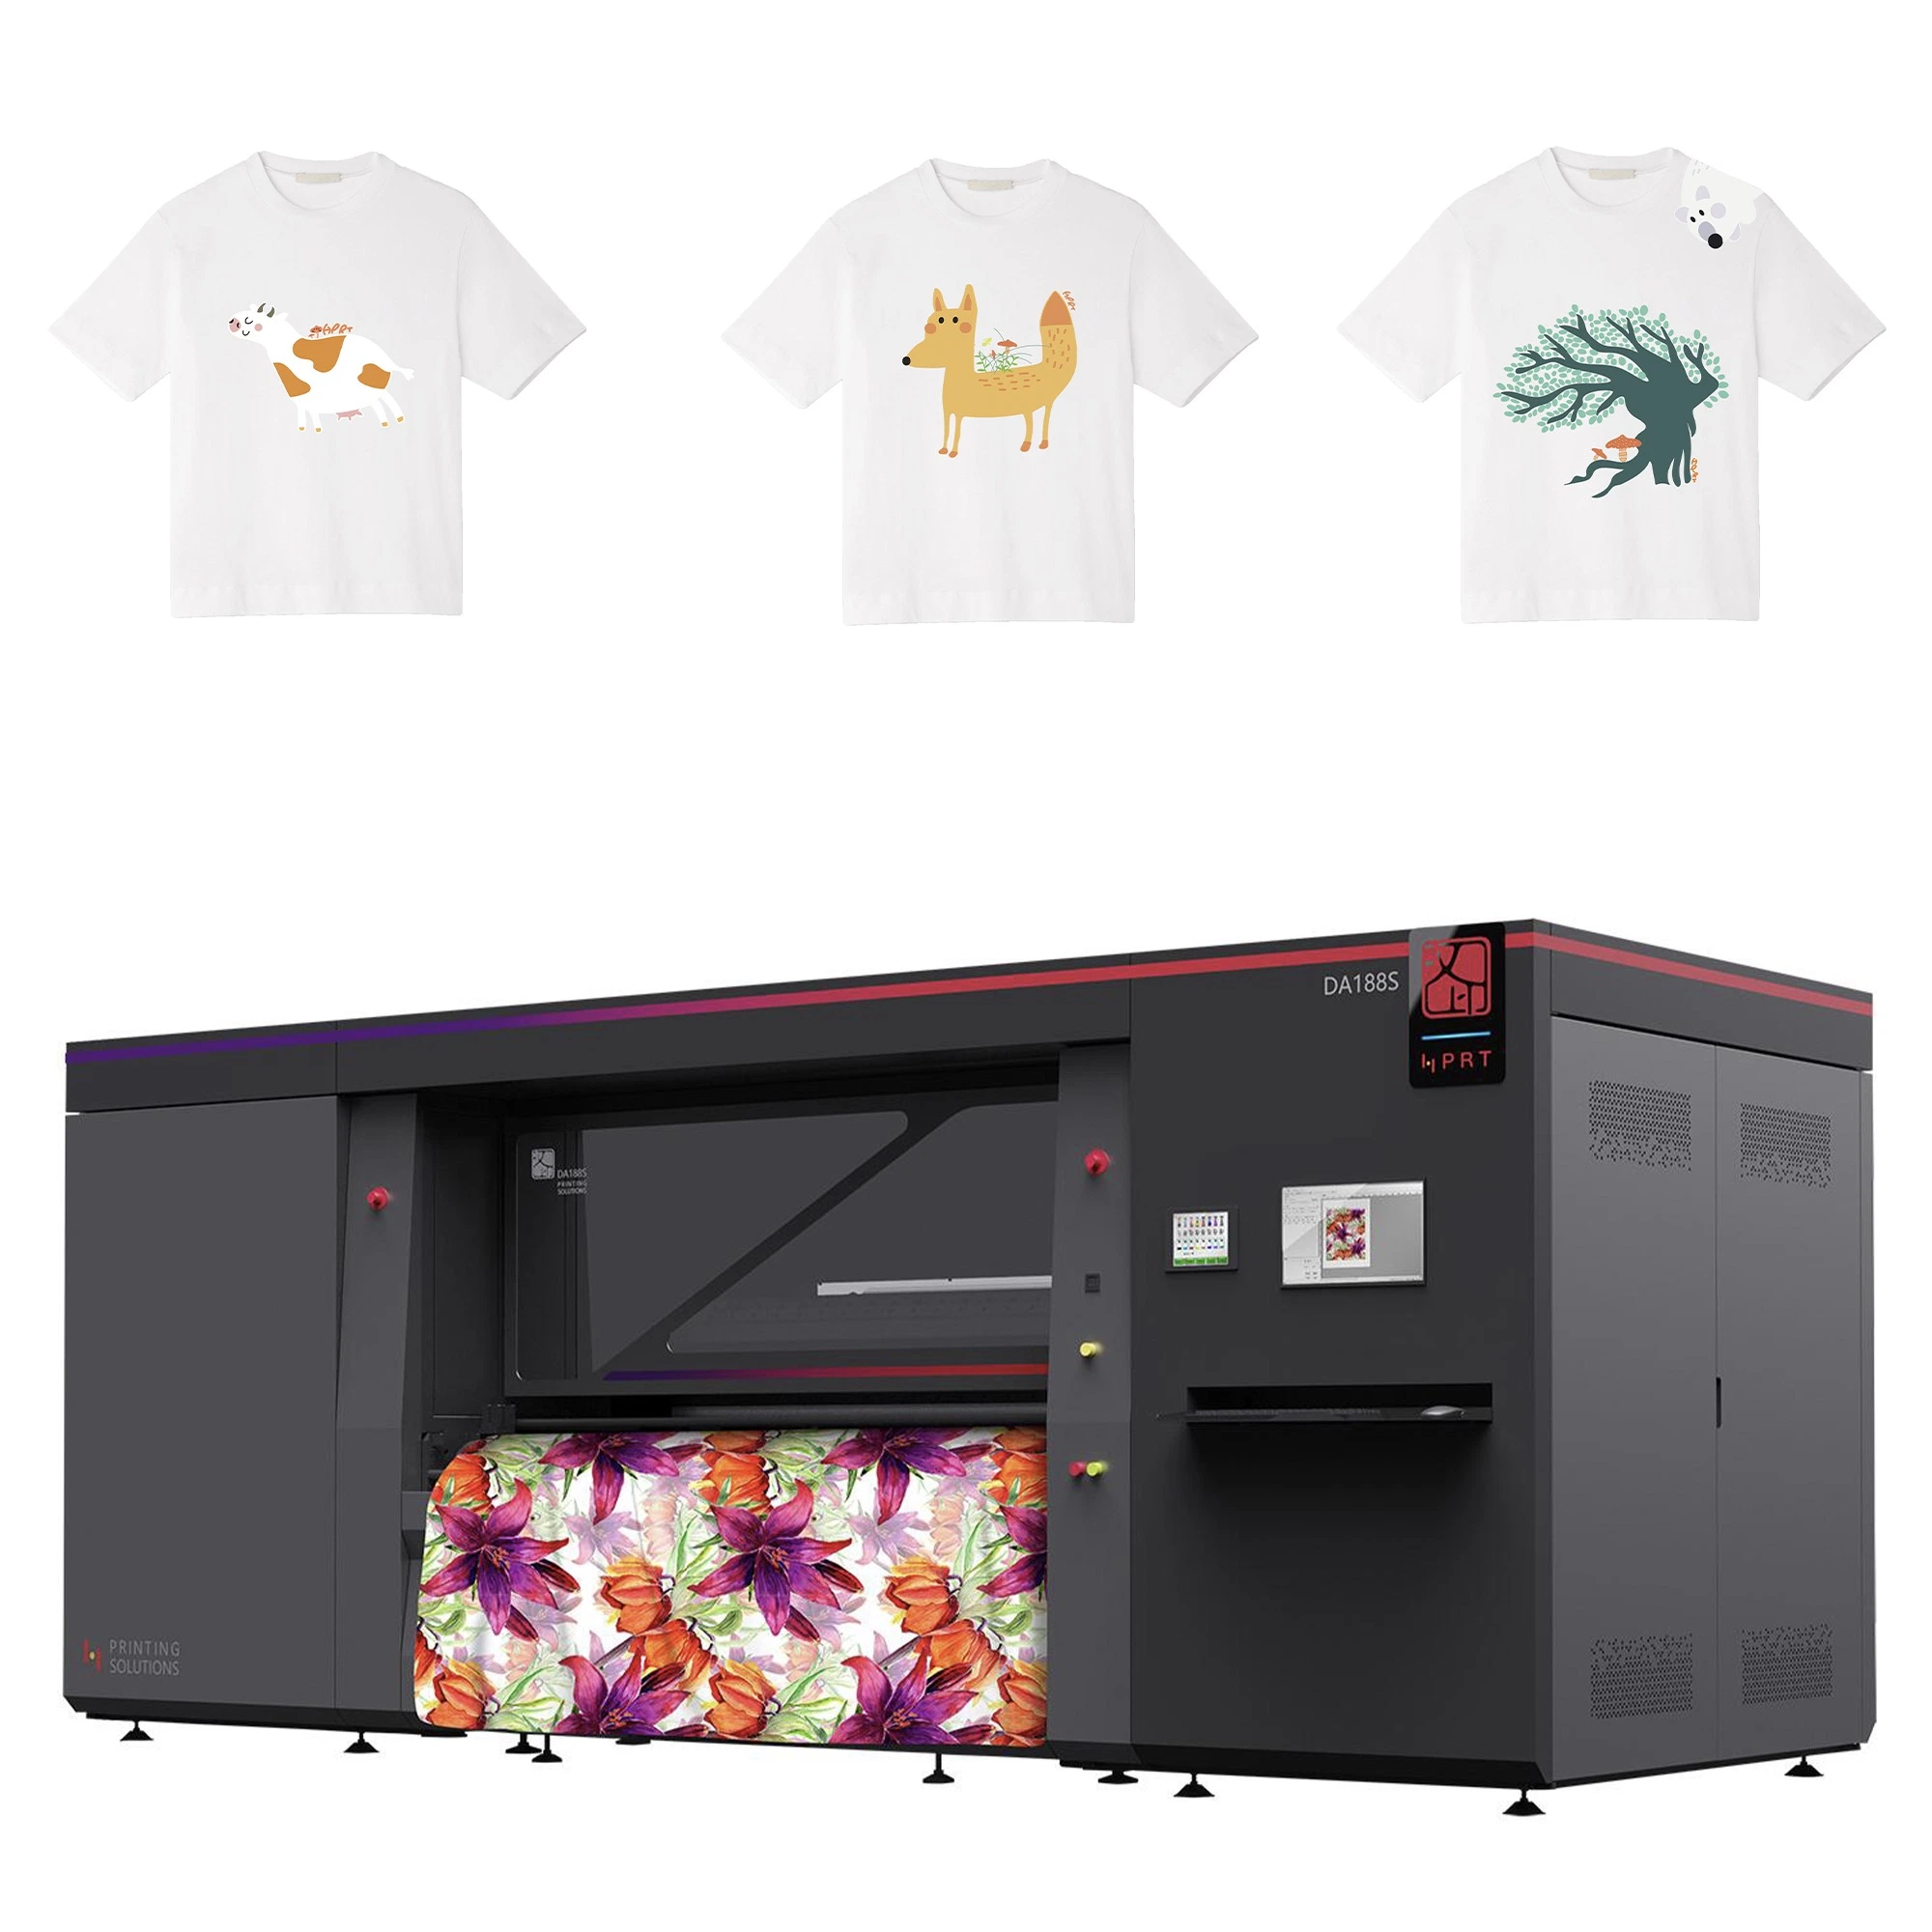 Tête d'impression Kyocera/16 32 couleurs/HPRT Industrial rouleau à l'imprimante jet d'encre numérique Tshirt vêtement machine d'impression textile